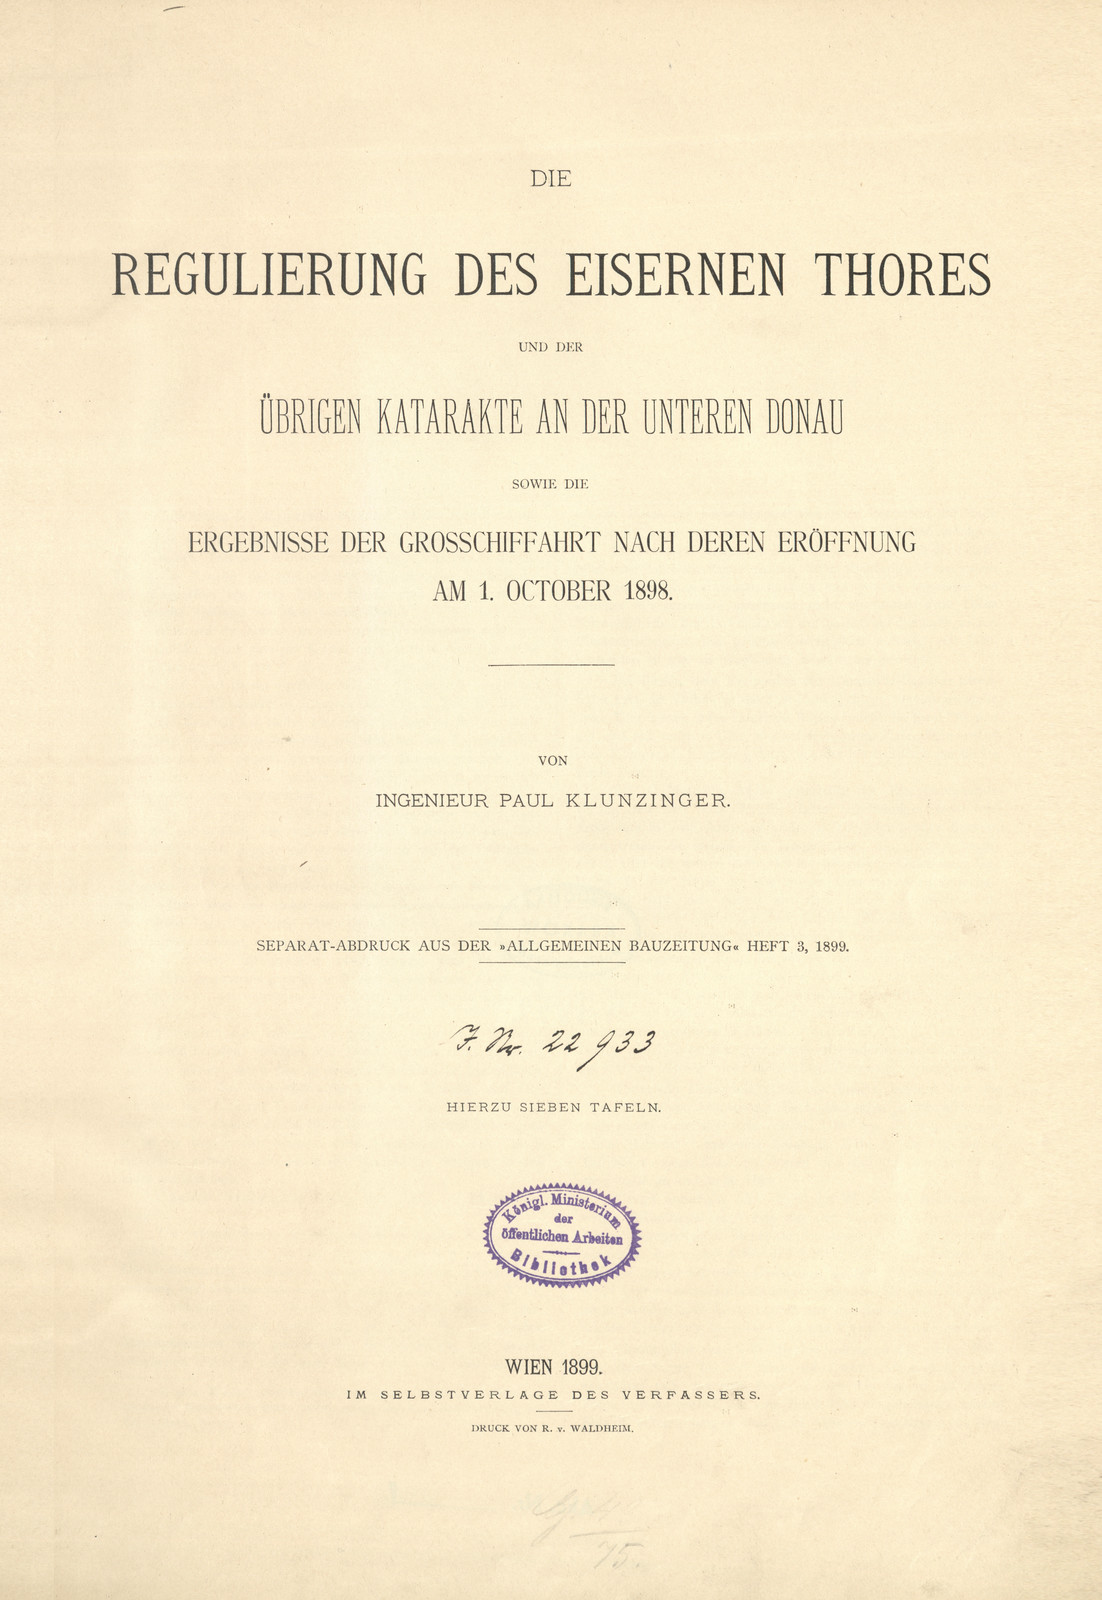 Die Regulierung des eisernen Thores und der übrigen Katarakte an der unteren Donau sowie die Ergebnisse der Grosschiffahrt nach deren Eröffnung am 1. October 1898